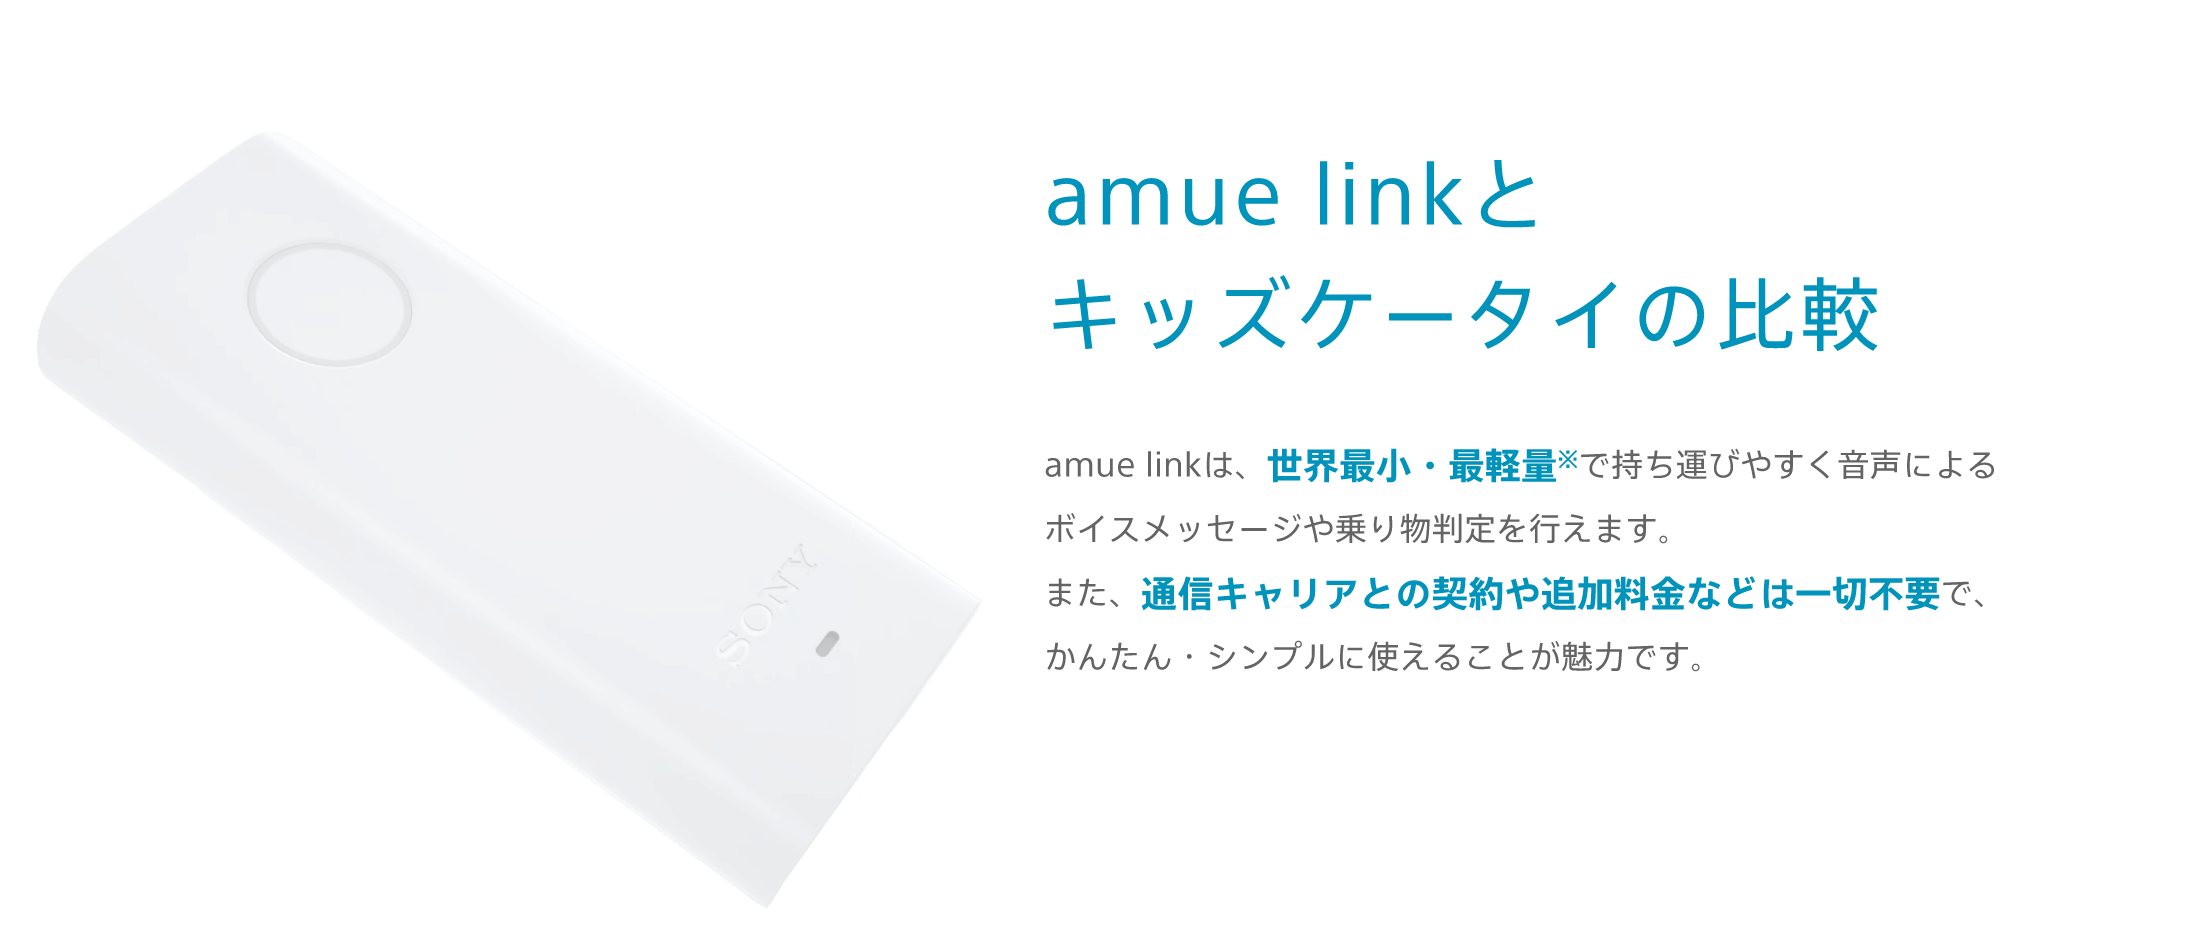 amue linkとキッズケータイの比較 amue linkは、世界最小・最軽量※で持ち運びやすく音声によるボイスメッセージや乗り物判定を行えます。また、通信キャリアとの契約や追加料金などは一切不要で、かんたん・シンプルに使えることが魅力です。